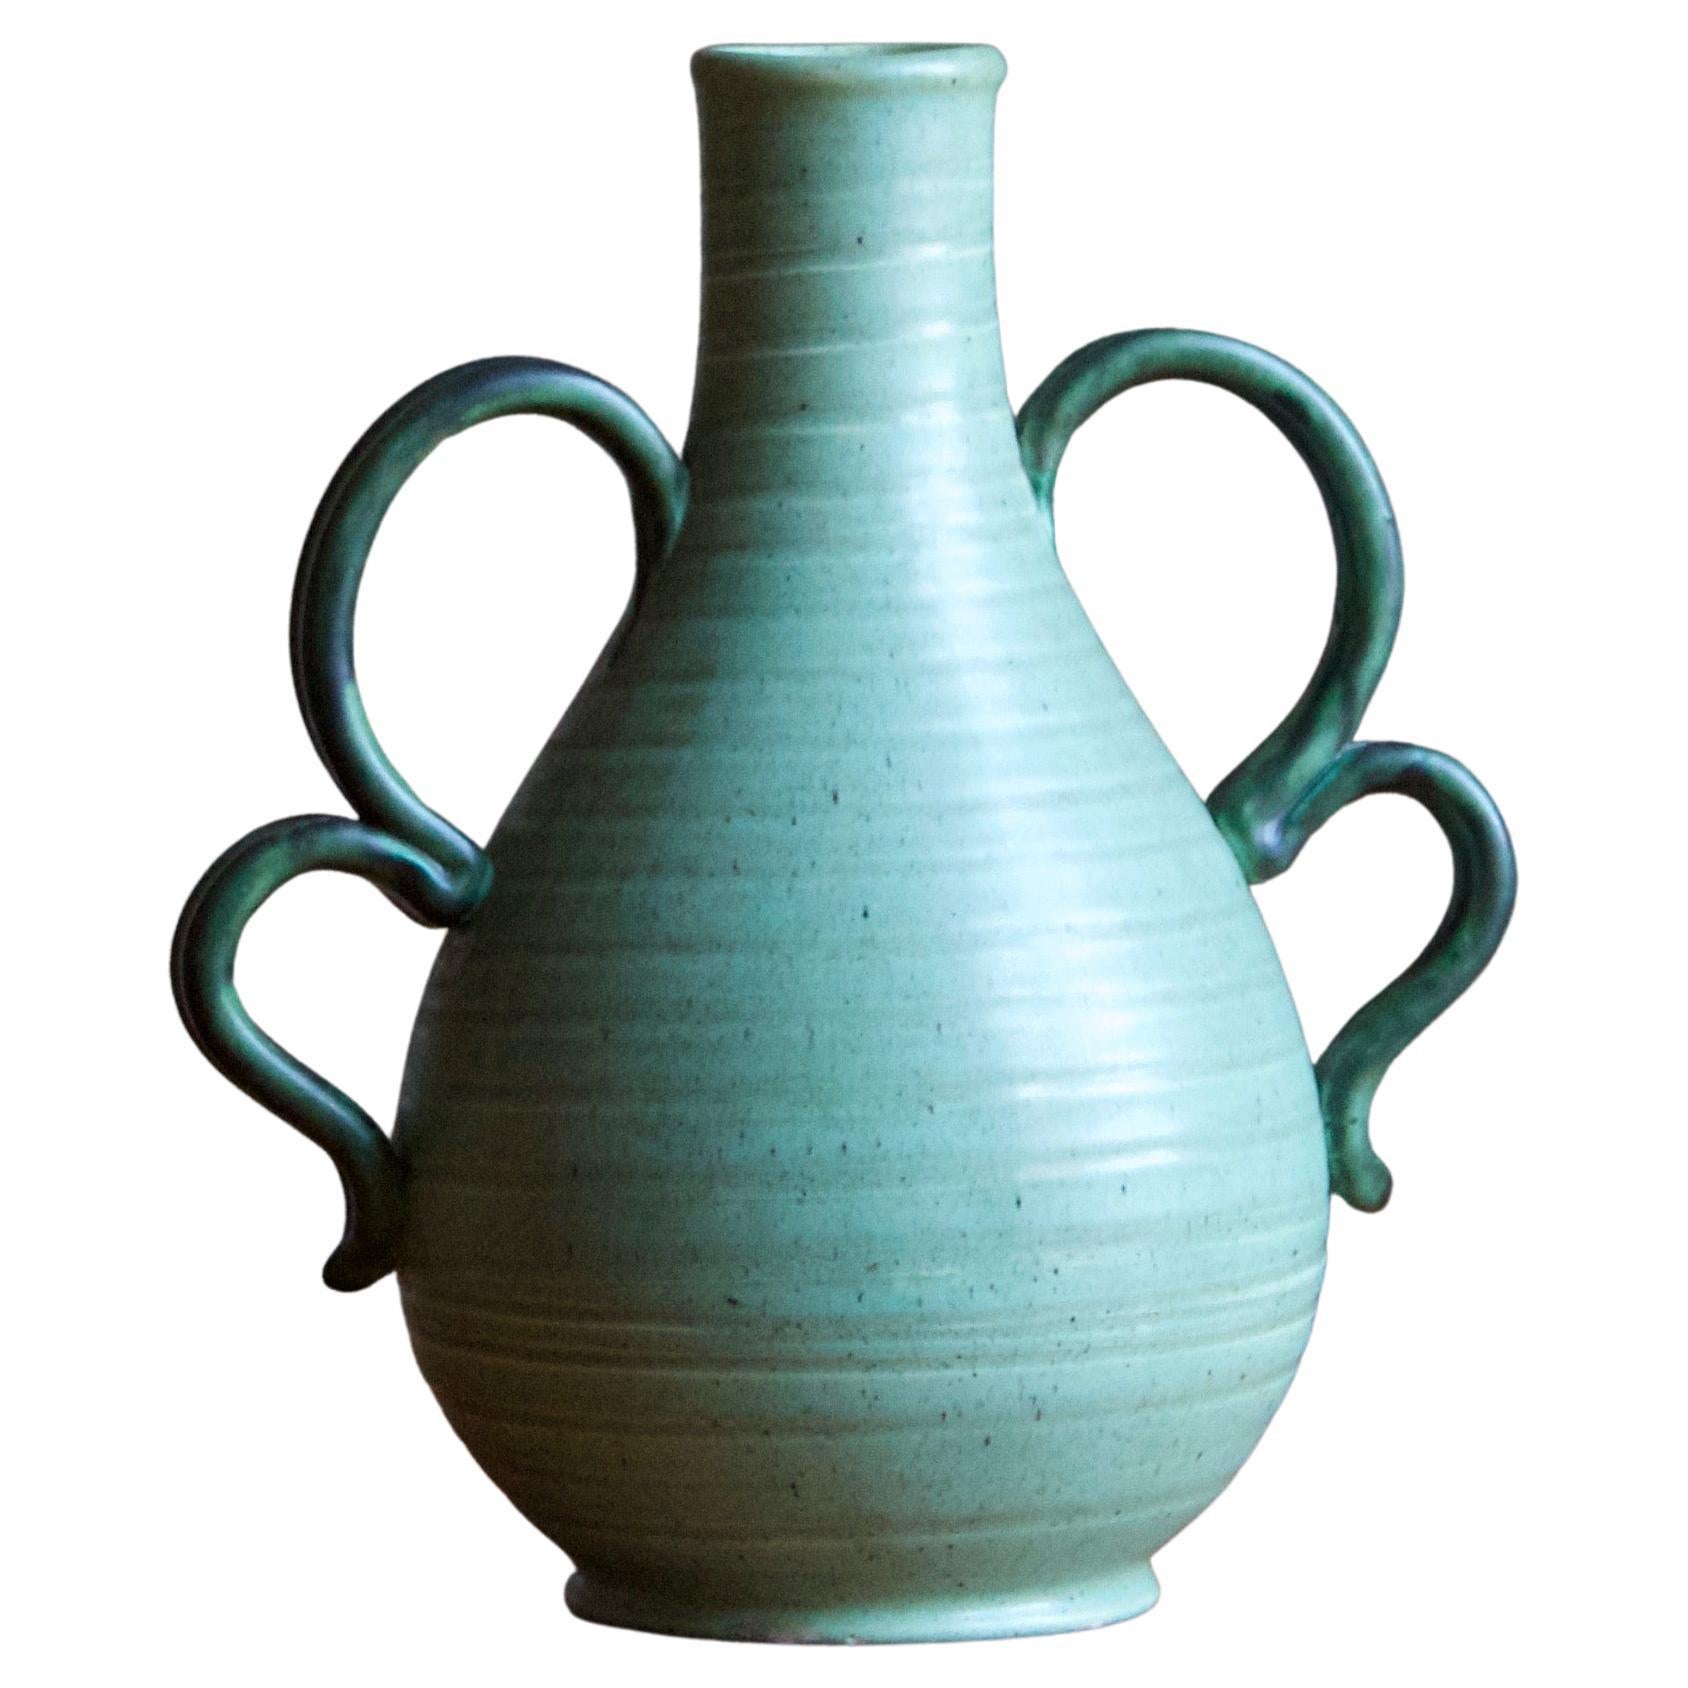 Eva Jancke Björk, Vase, Green Glaze Ceramic, for Bo Fajans, Sweden, 1940s